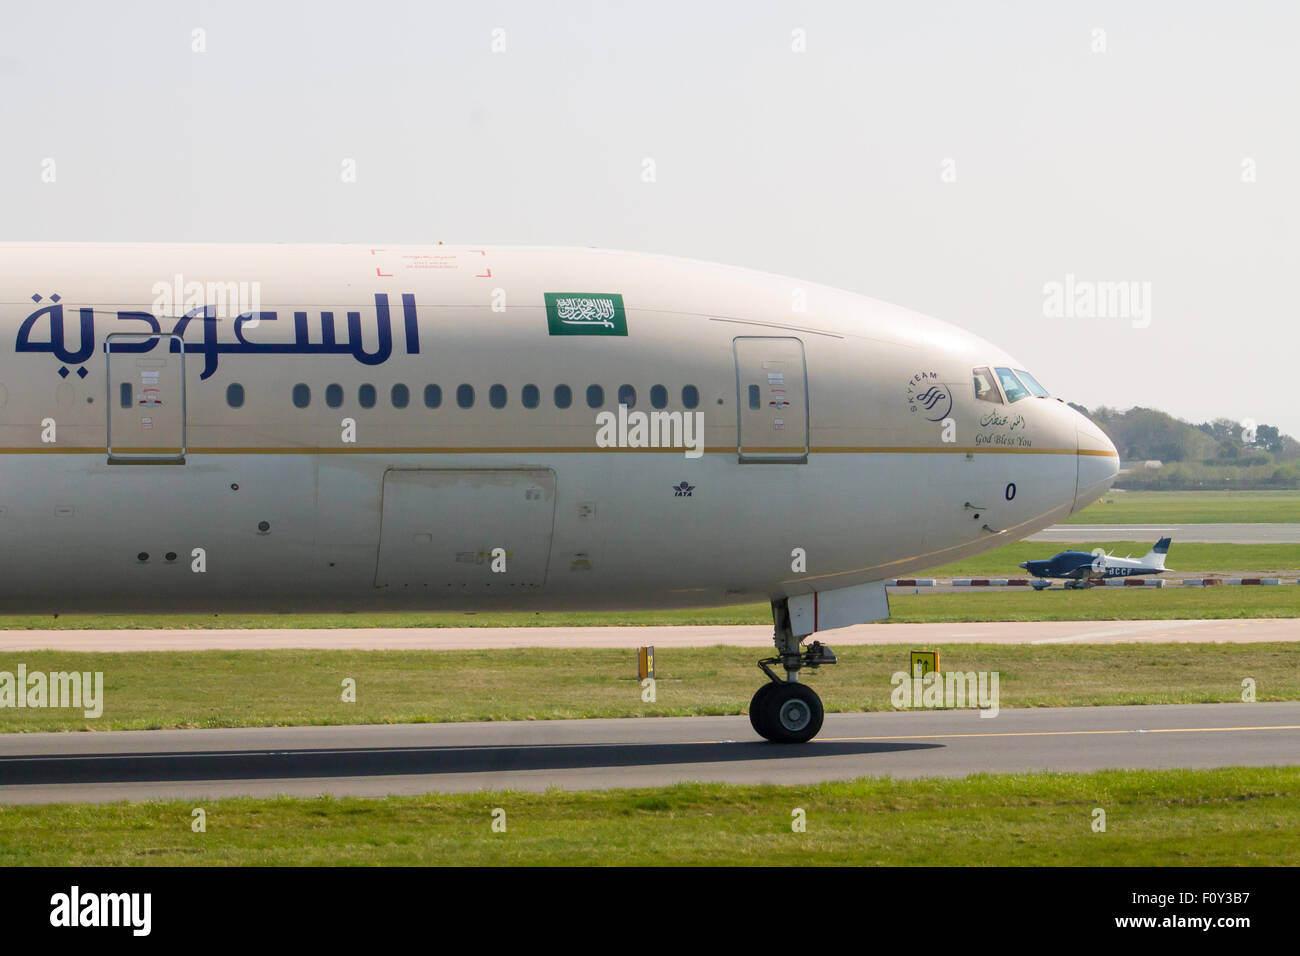 Saudi Arabian Airlines Boeing 777, la circulation au sol en face de l'Aéroport International de Manchester. Banque D'Images